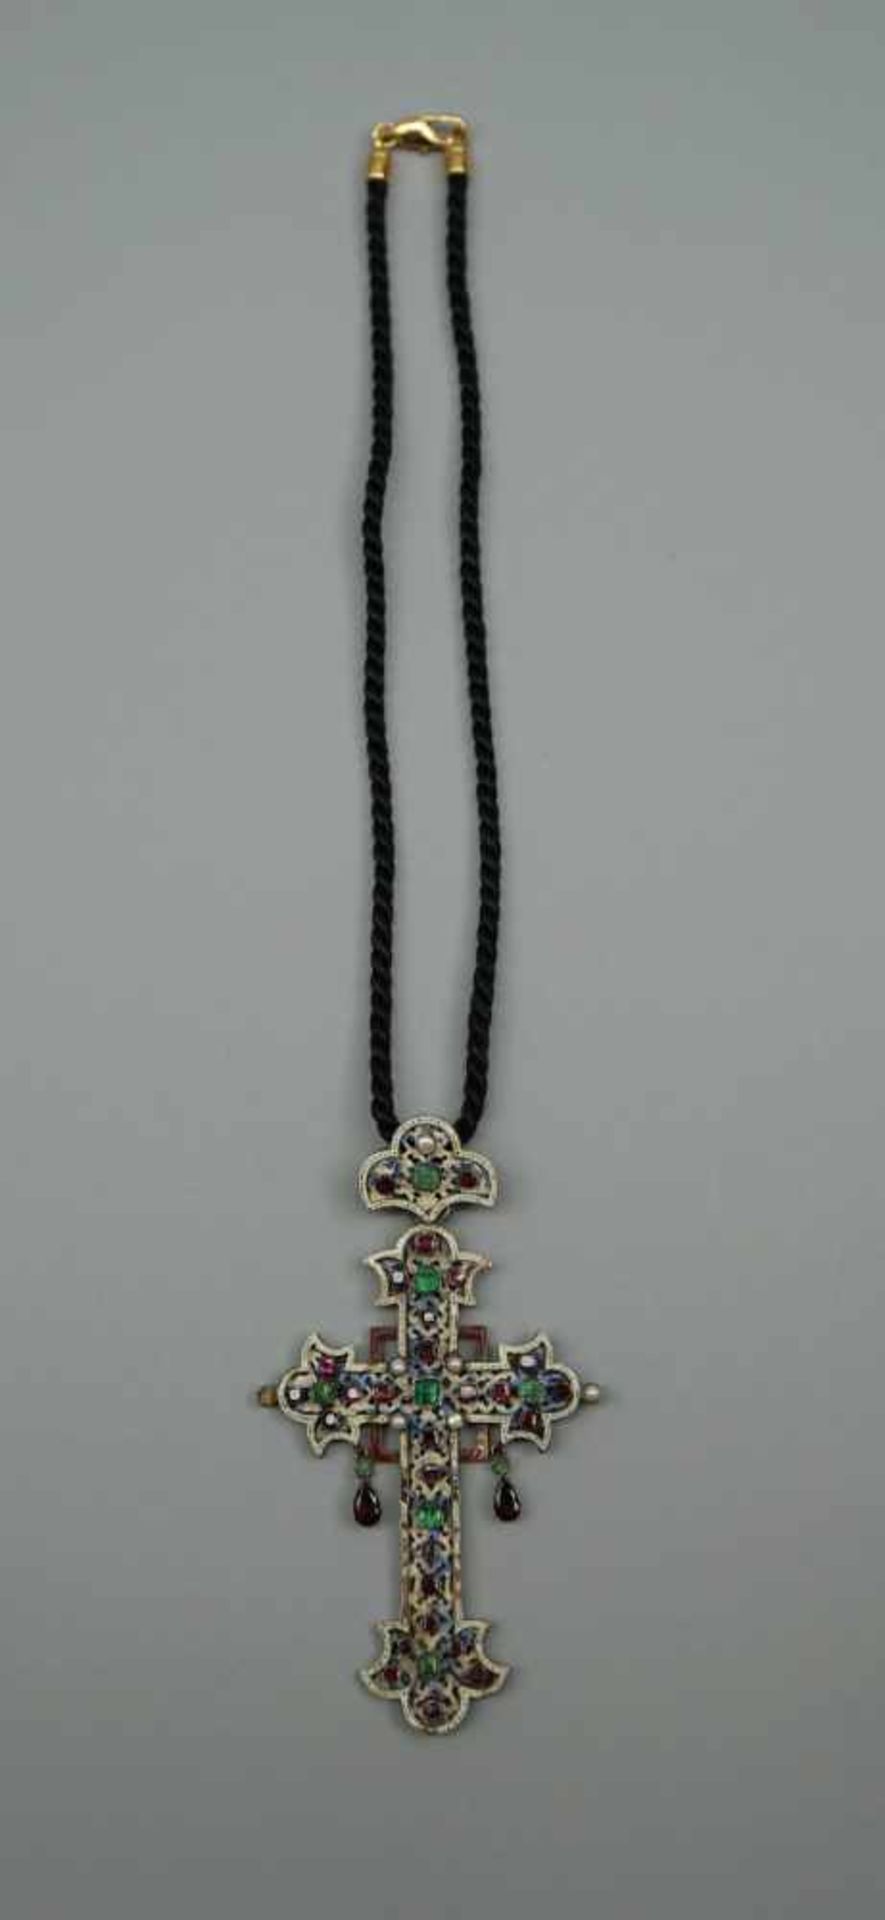 Kette mit Silber-KreuzSilber-Kreuz mit Emaille, besetzt mit Perlen, Almandinen sowie kleinen